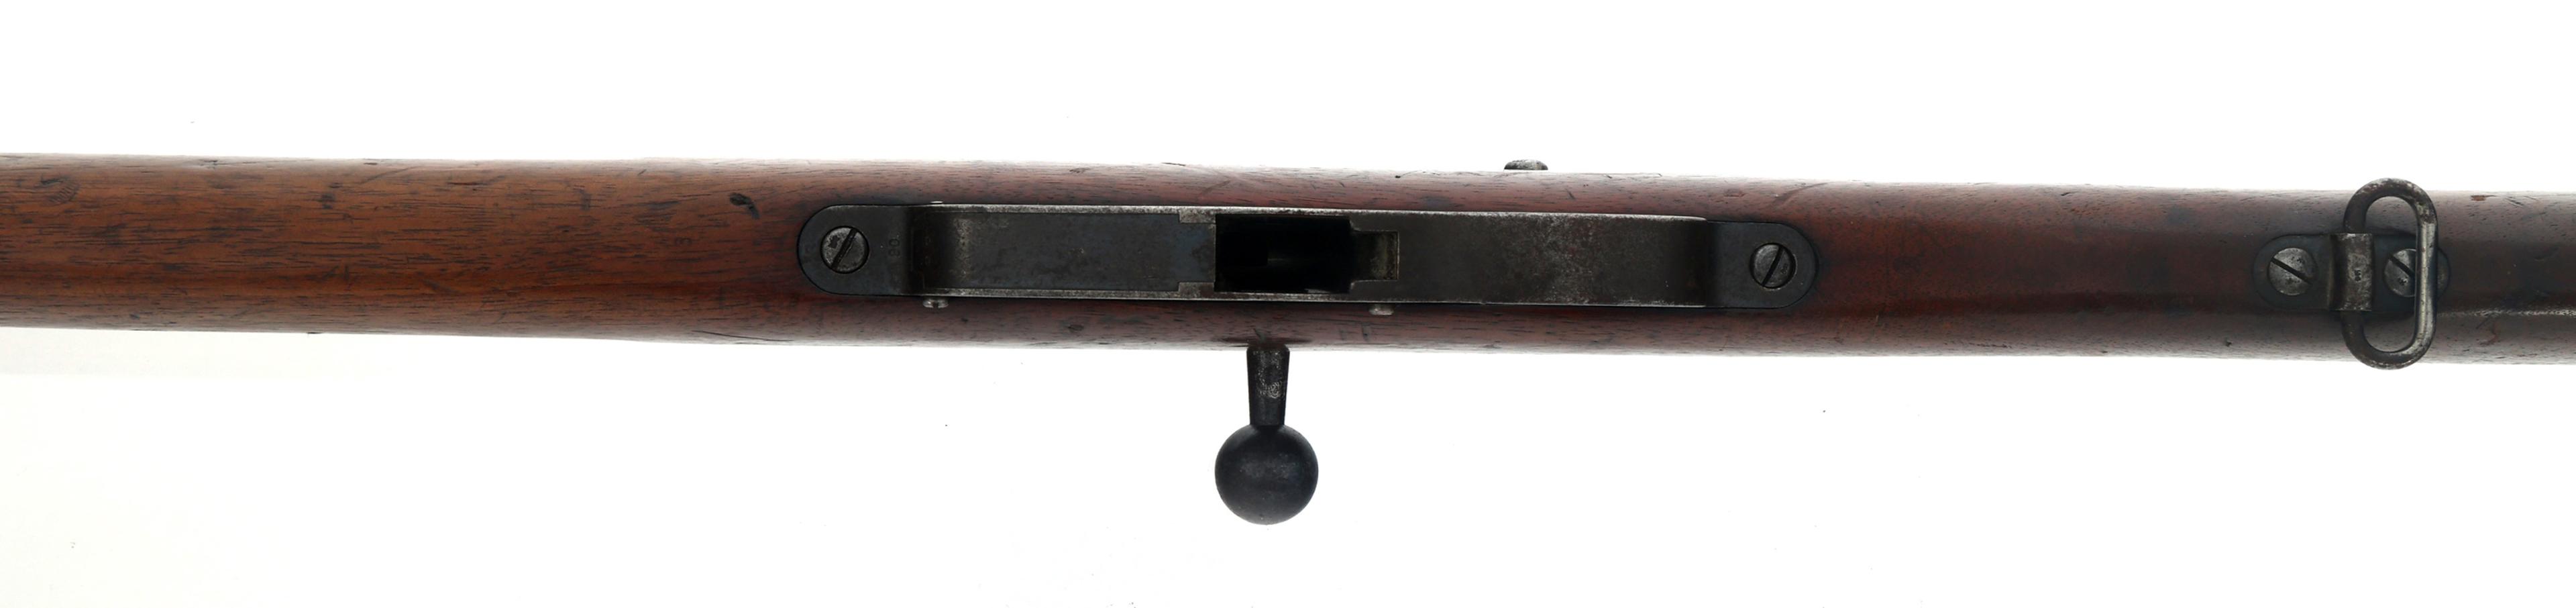 STEYR MANNLICHER MODEL 1893 6.5mm CALIBER RIFLE